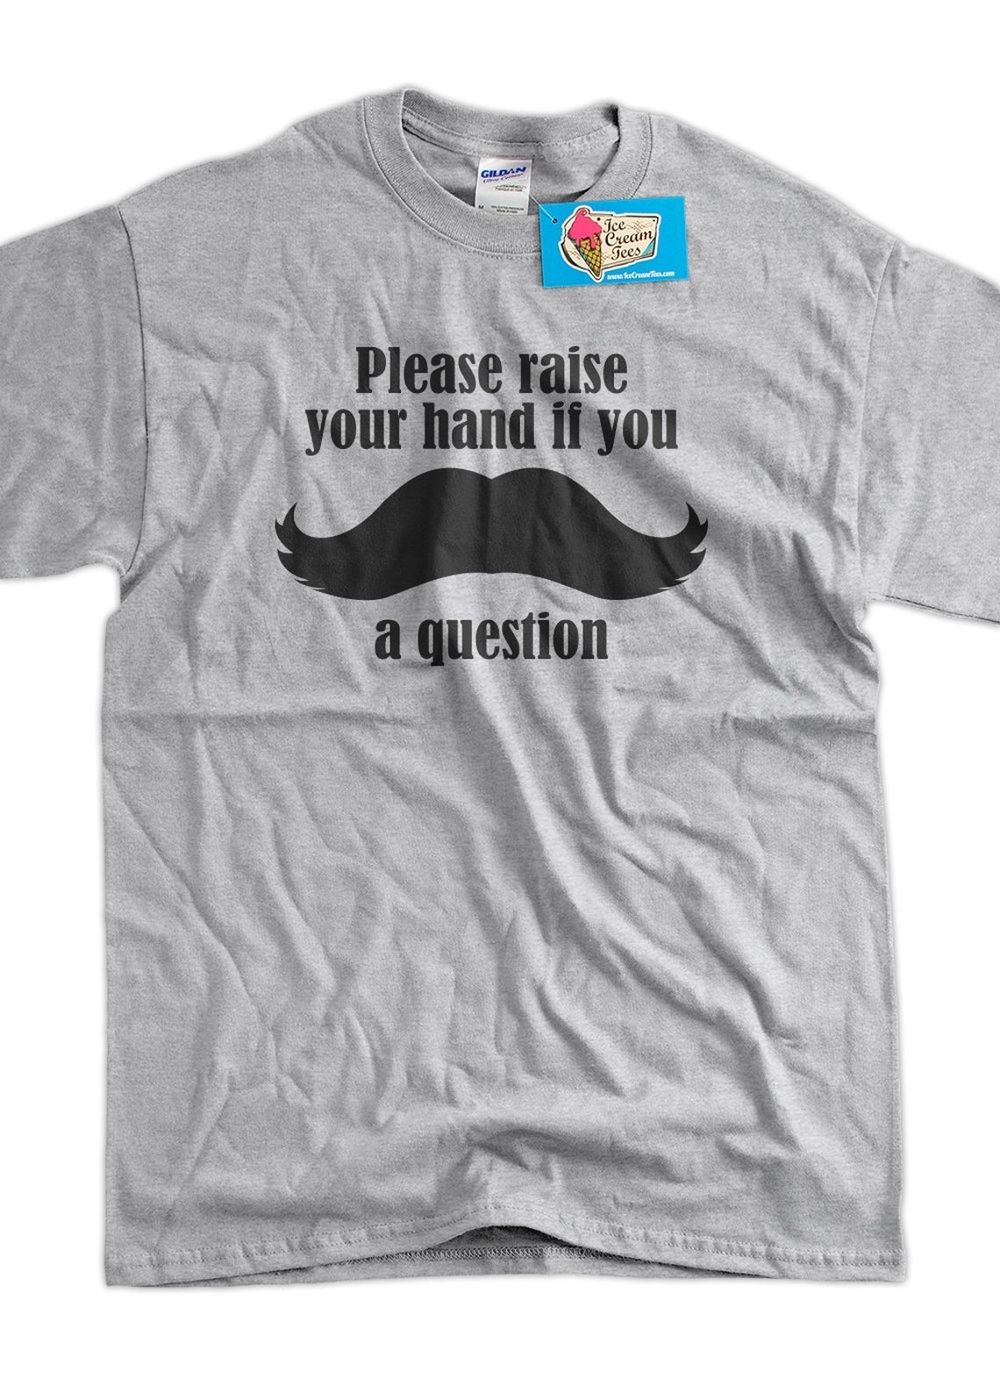 Mustache shirt teacher gift